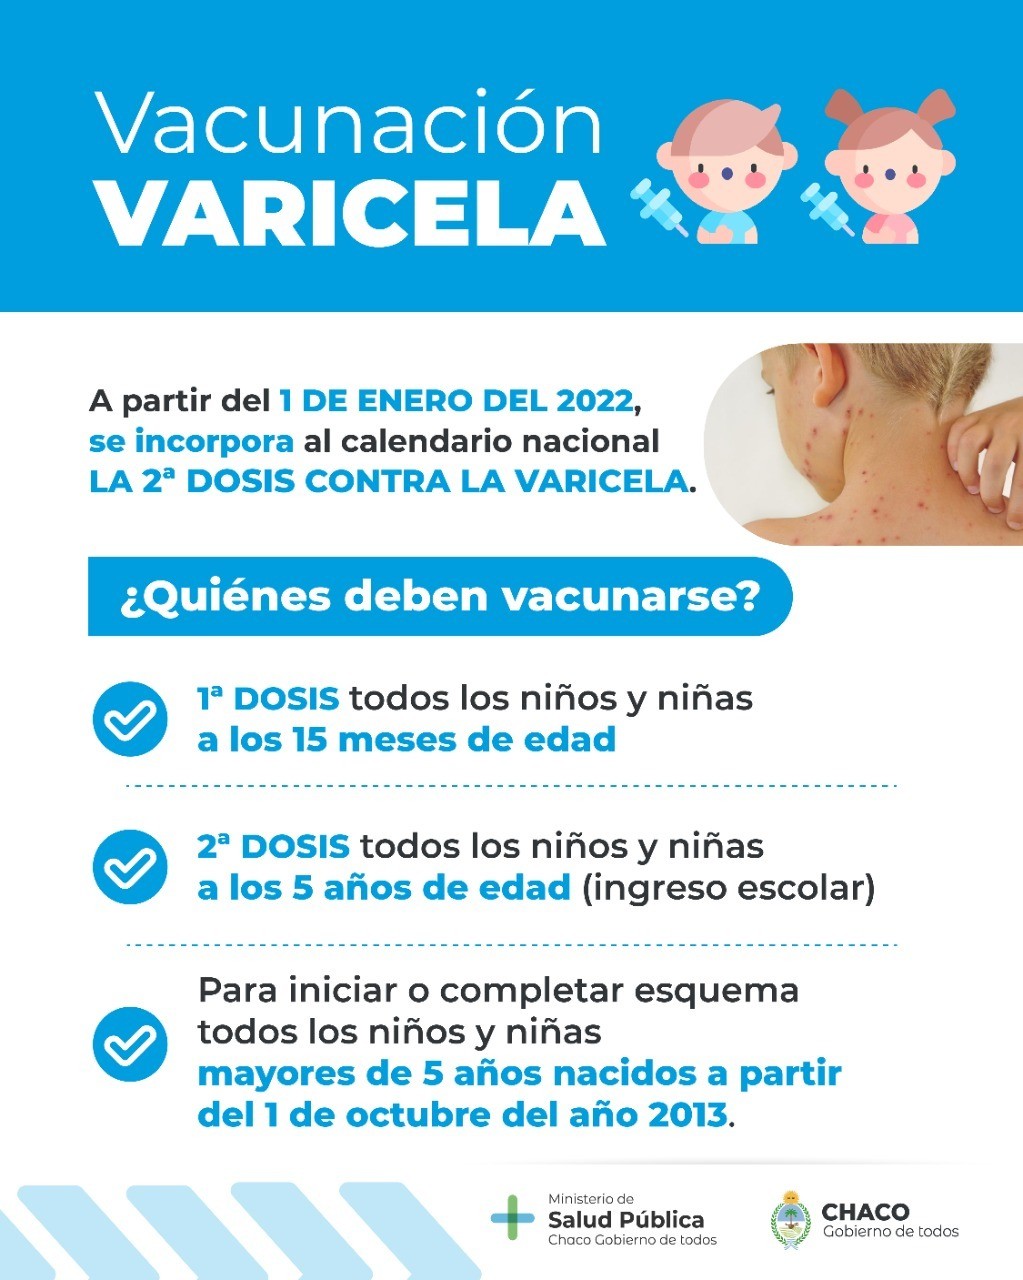 Chaco incorporó la segunda dosis contra varicela para niñas y niños de 5 años